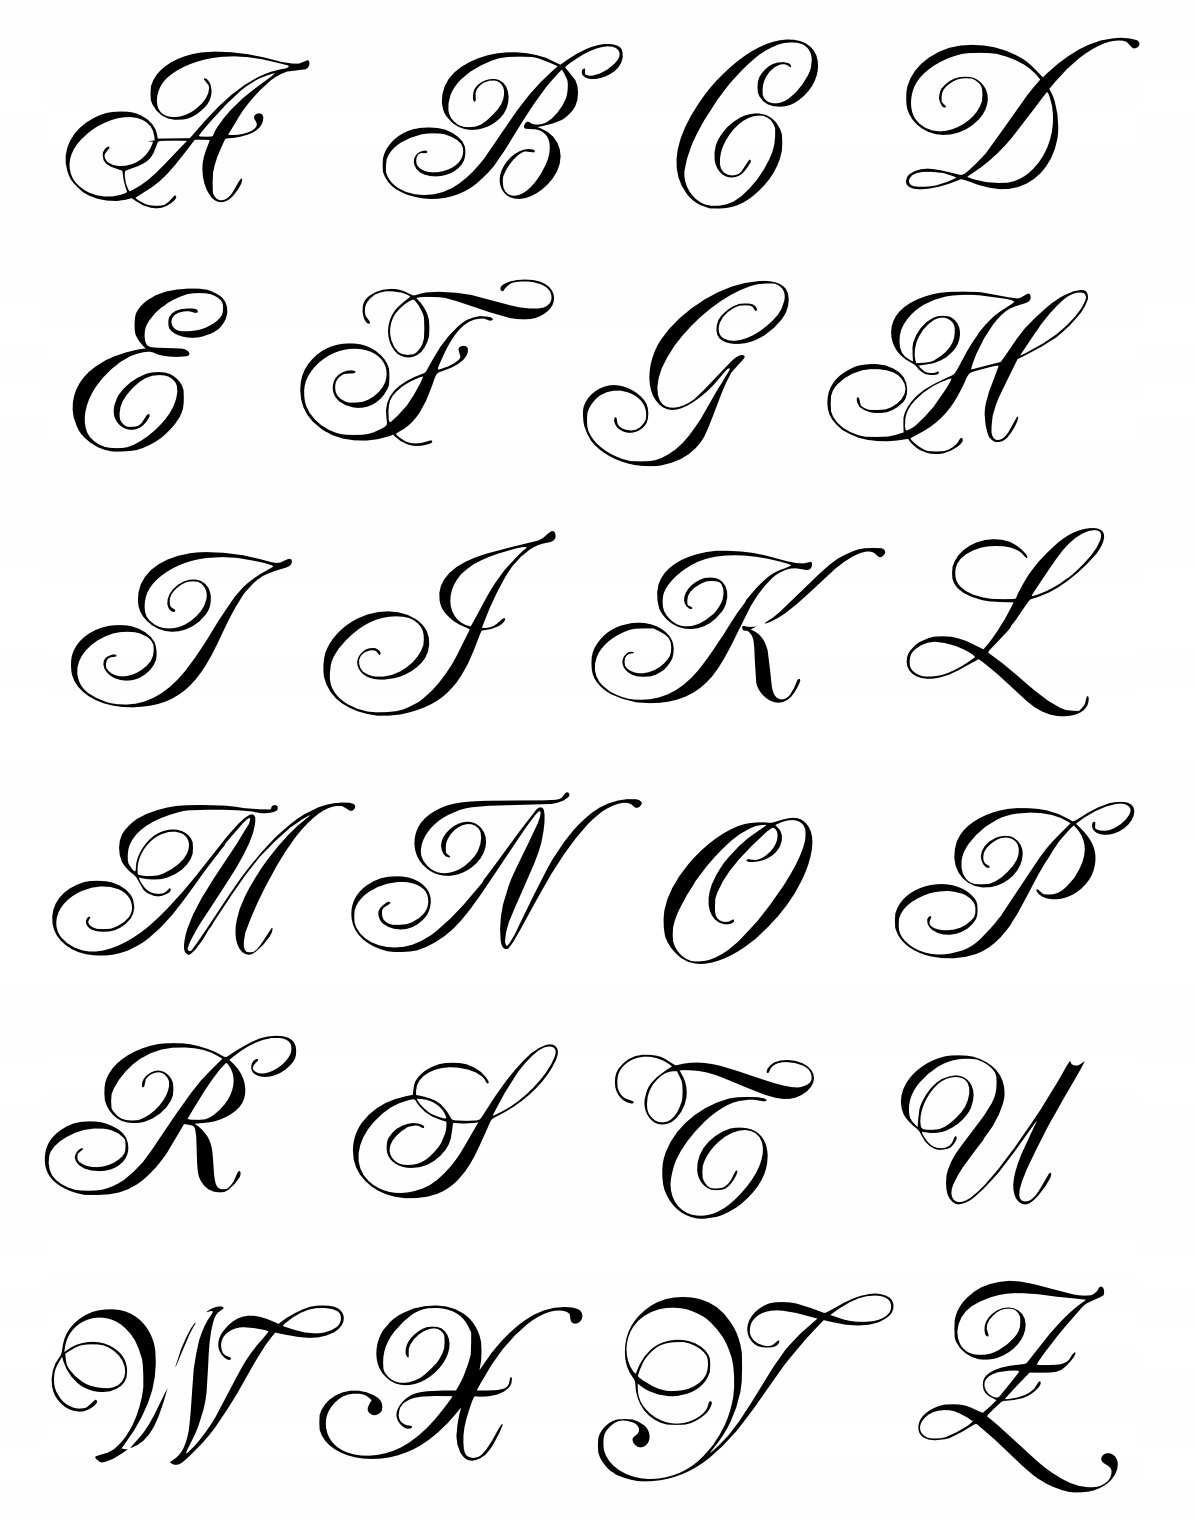 Как красиво написать букву печатную. Красивые буквы. Красивые буквы алфавита. Буквы красивым шрифтом. Буквы кра ивым шрифтом.